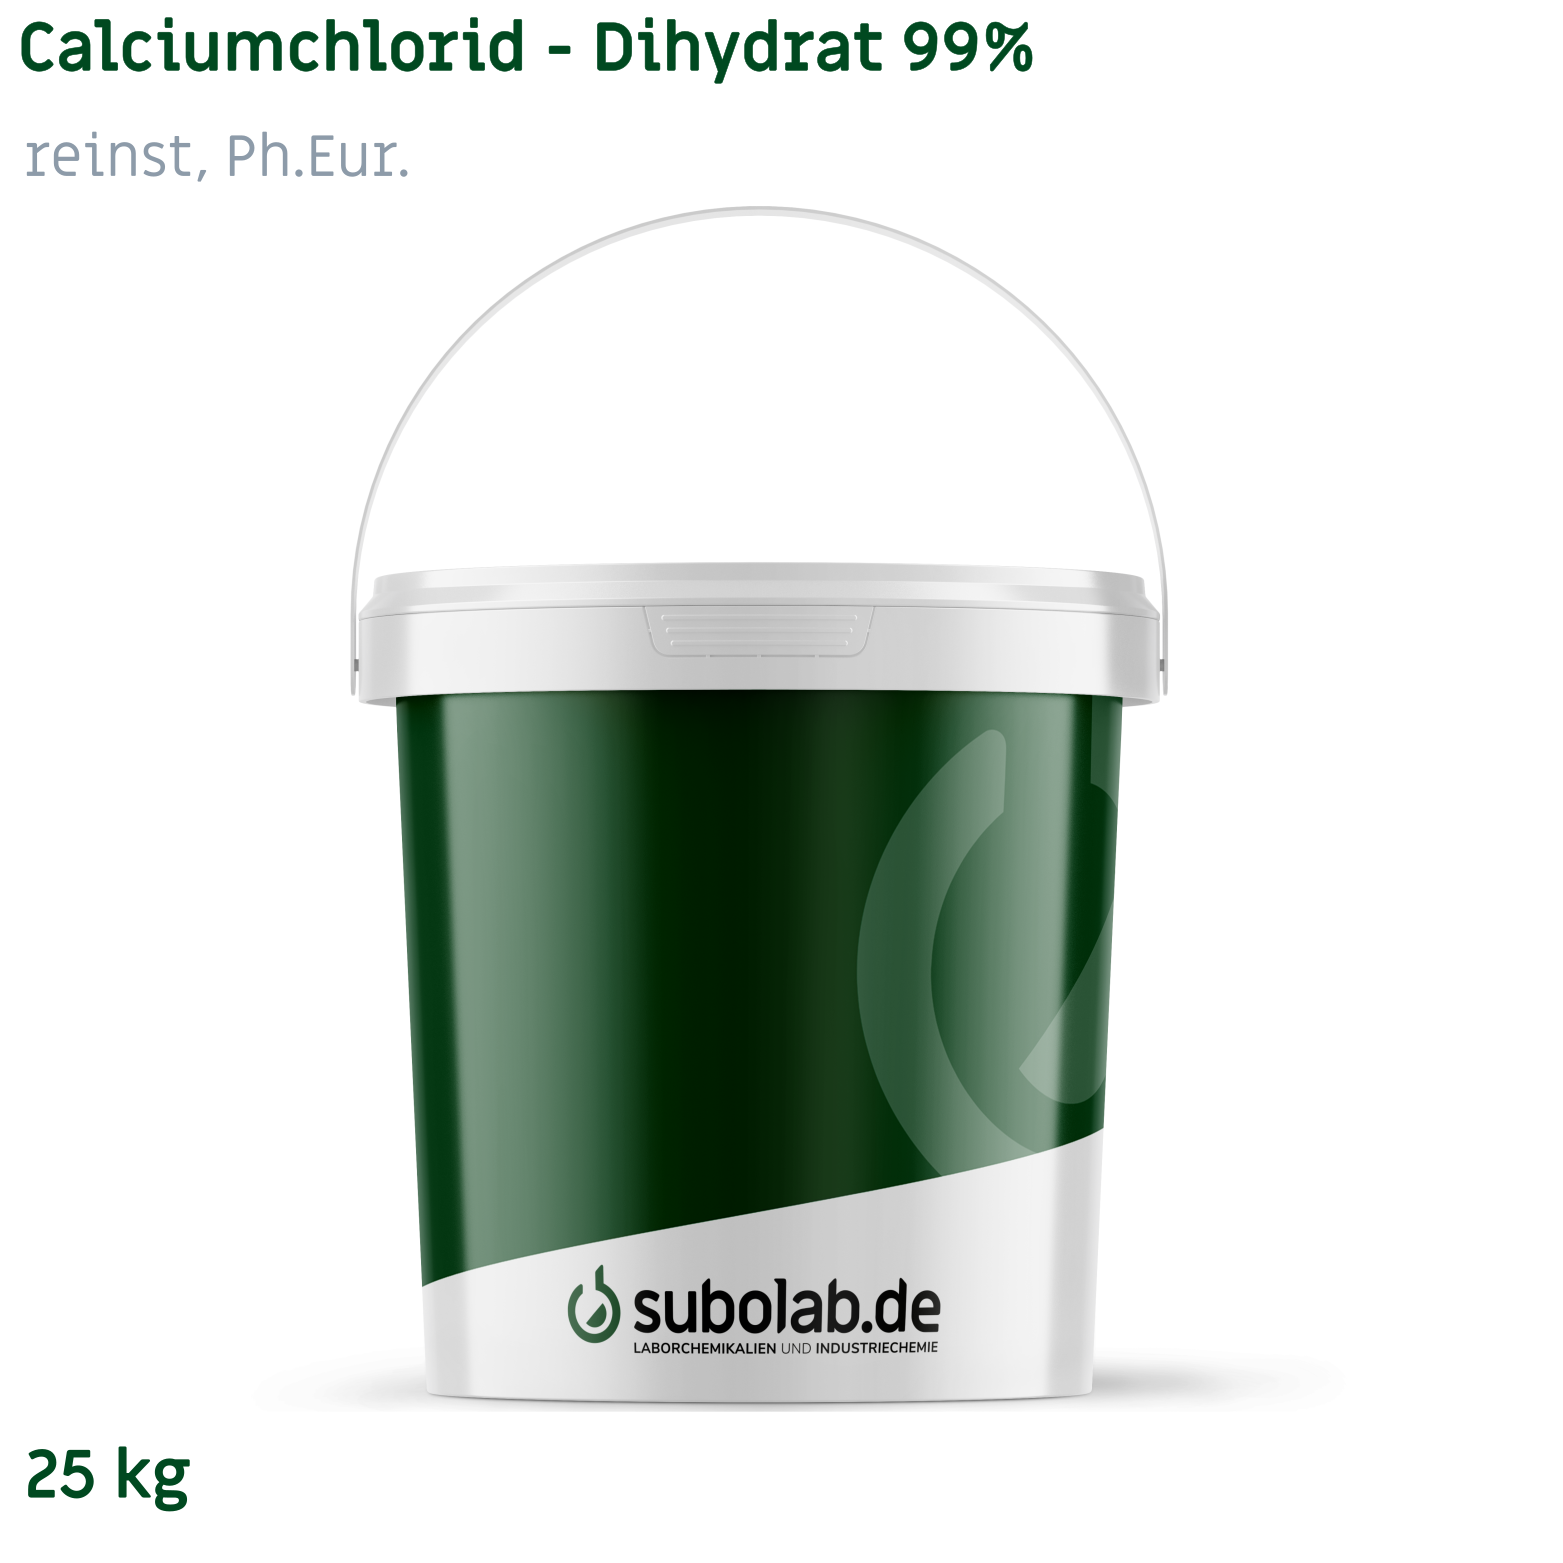 Bild von Calciumchlorid - Dihydrat 99% reinst, Ph.Eur. (25 kg)